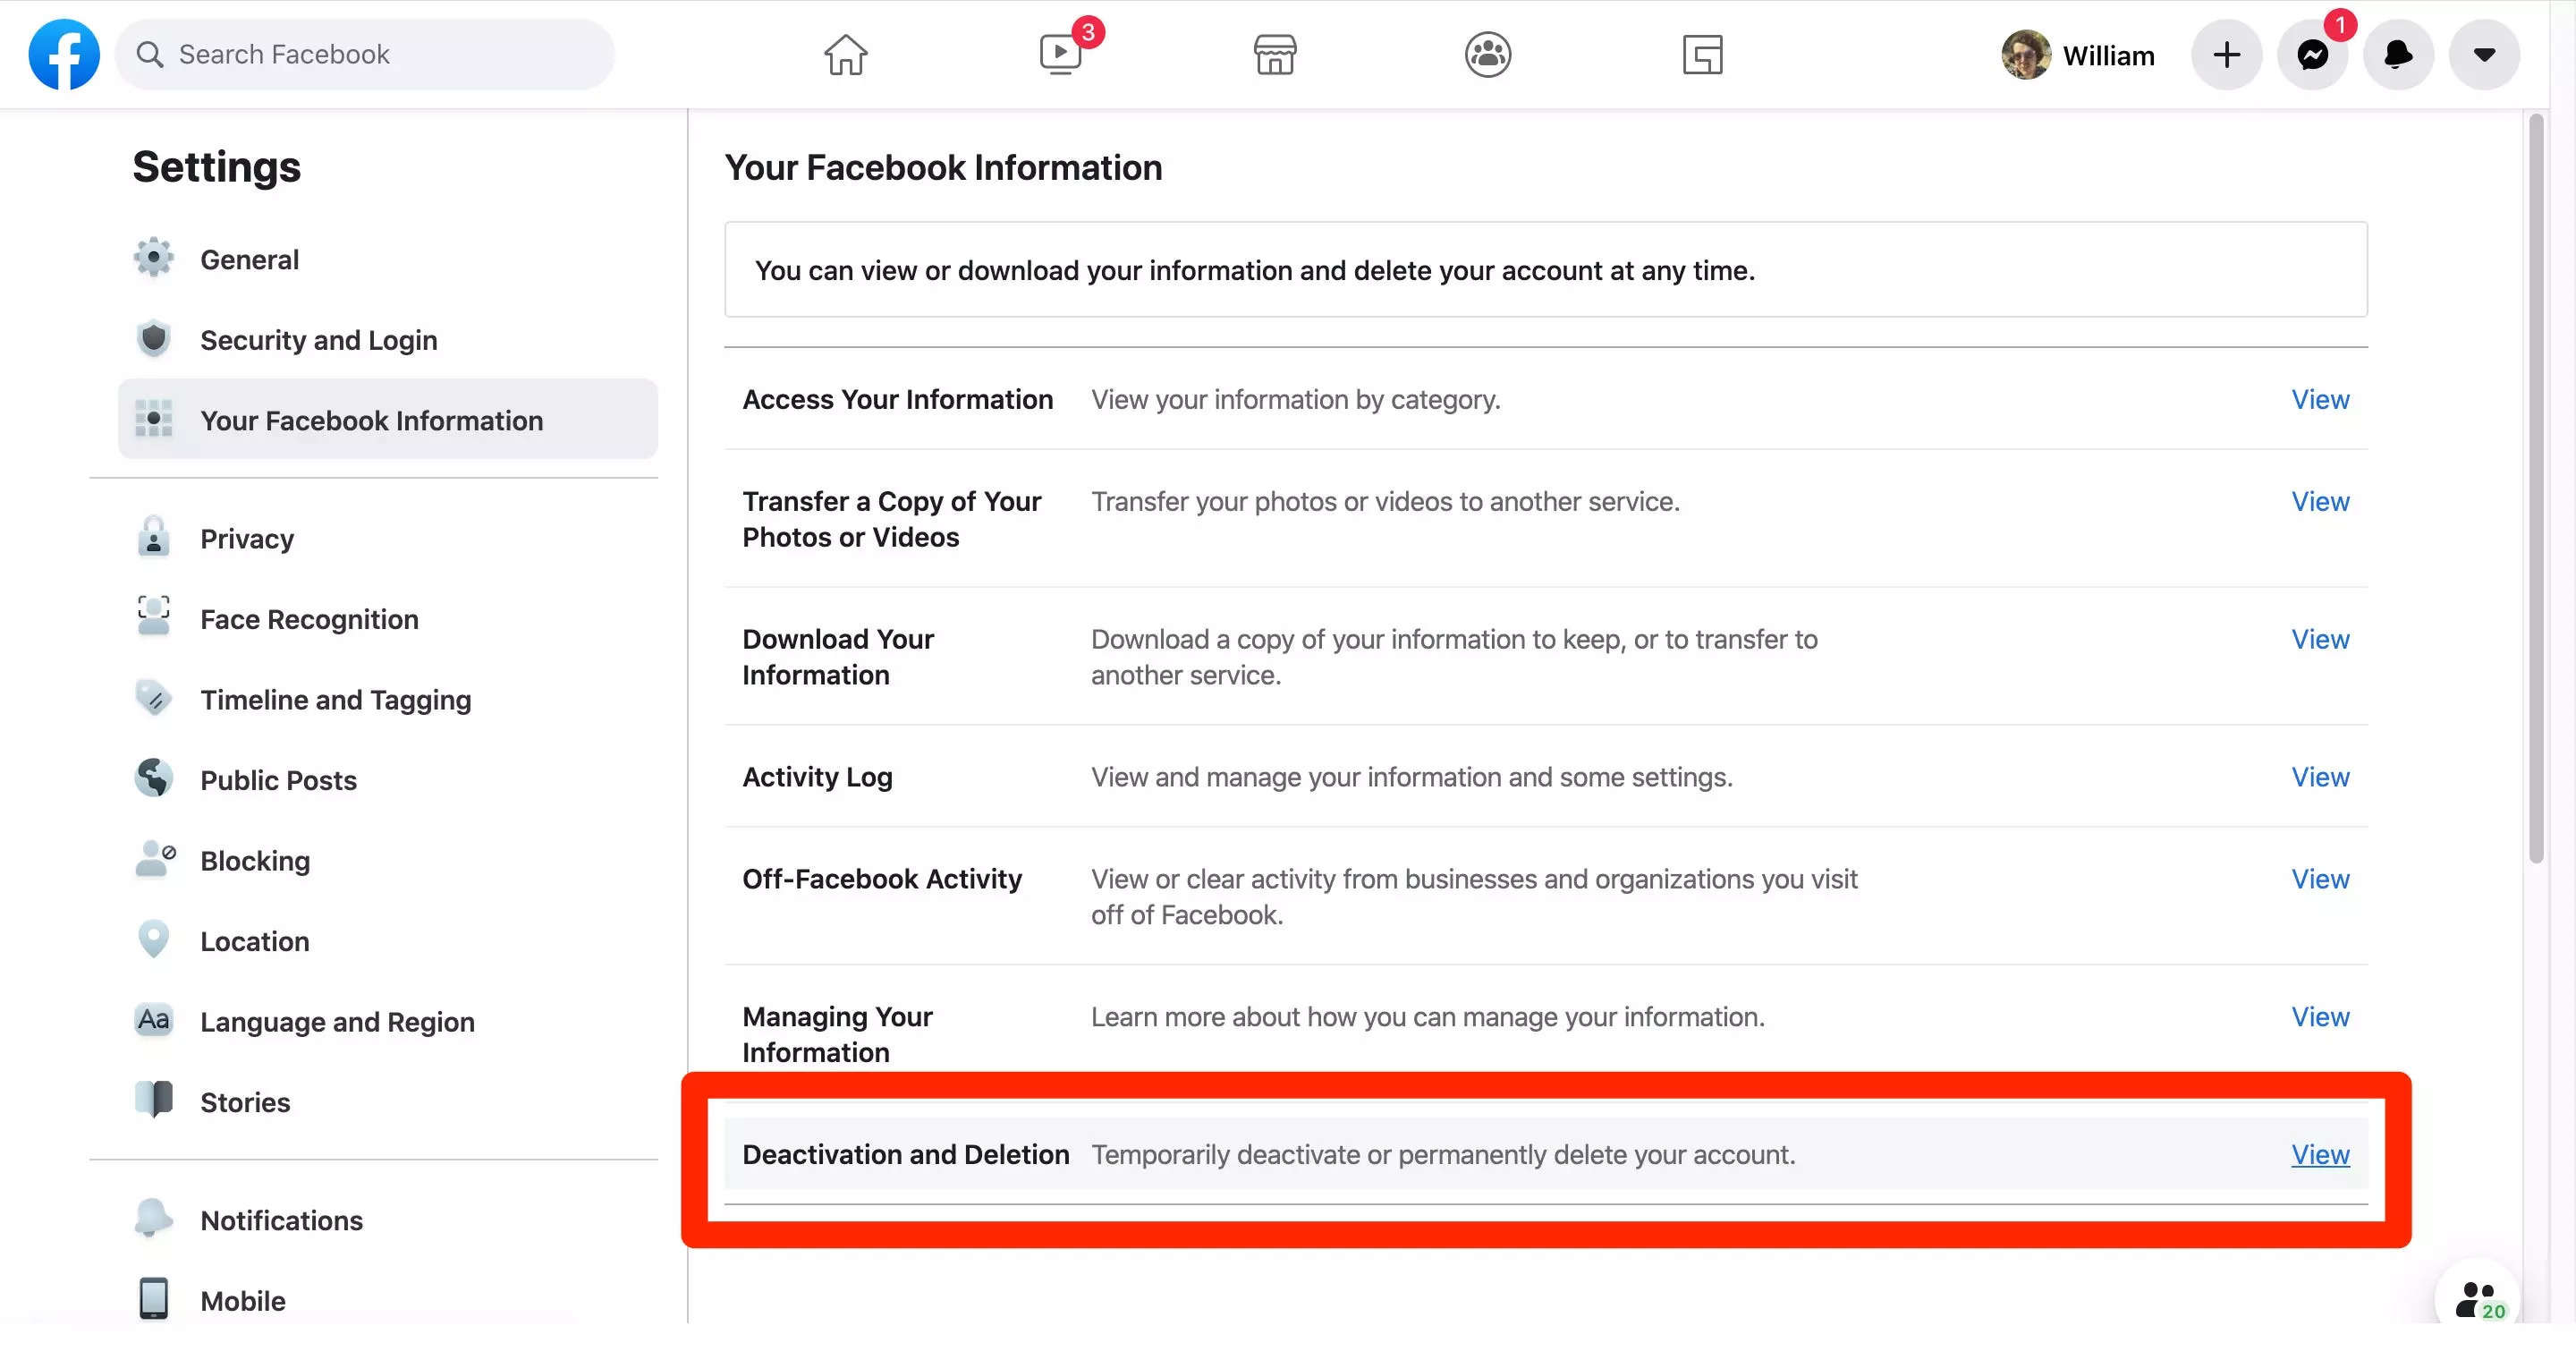 So löschen Sie Ihr Facebook-Konto auf einem Computer oder Telefon und speichern alle Ihre persönlichen Daten